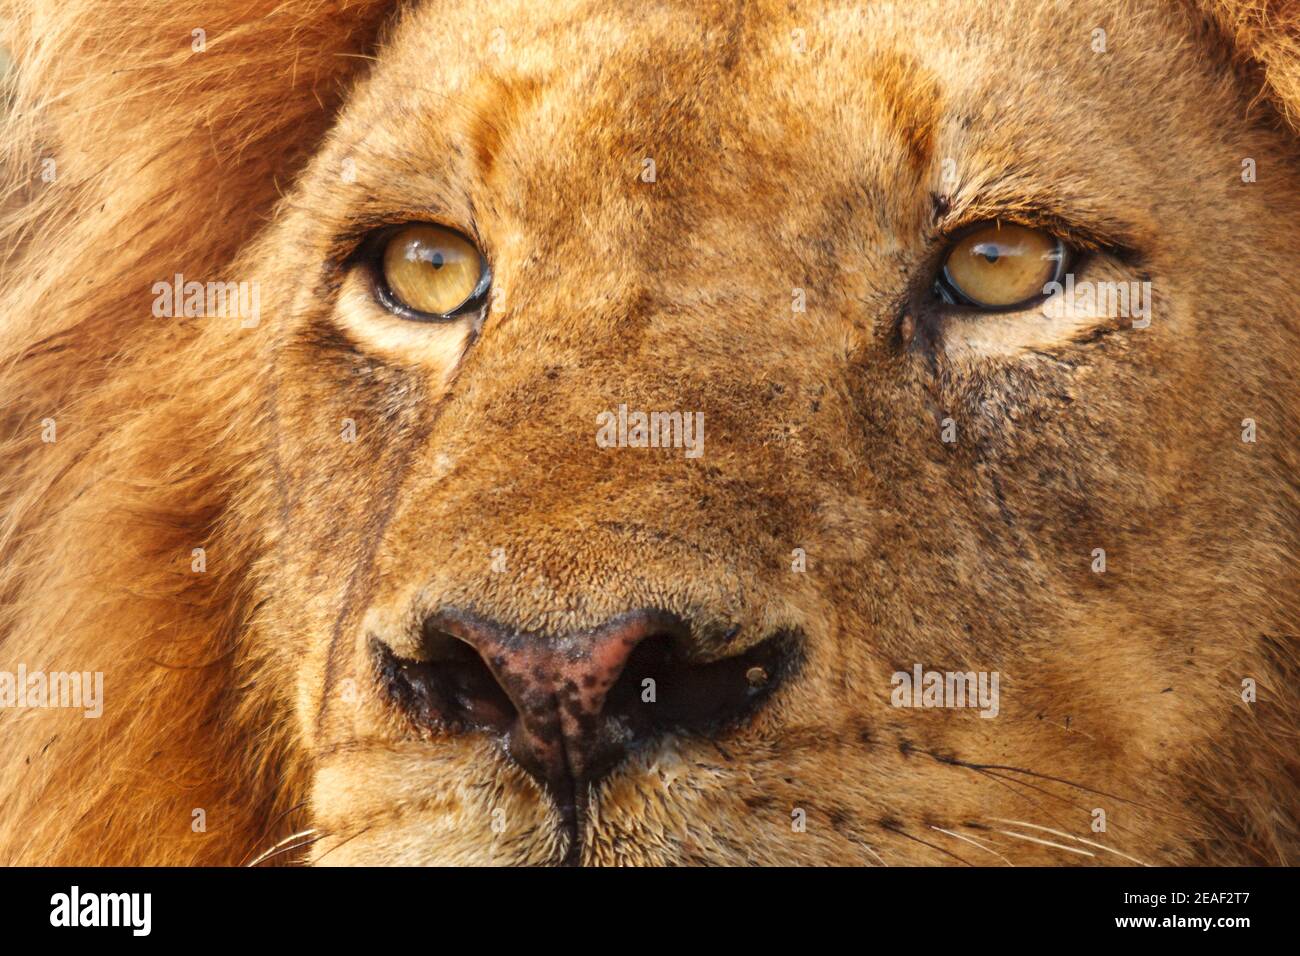 Lion, Panthera leo, homme, portrait, Orpen District, Parc national Kruger, Afrique du Sud Banque D'Images